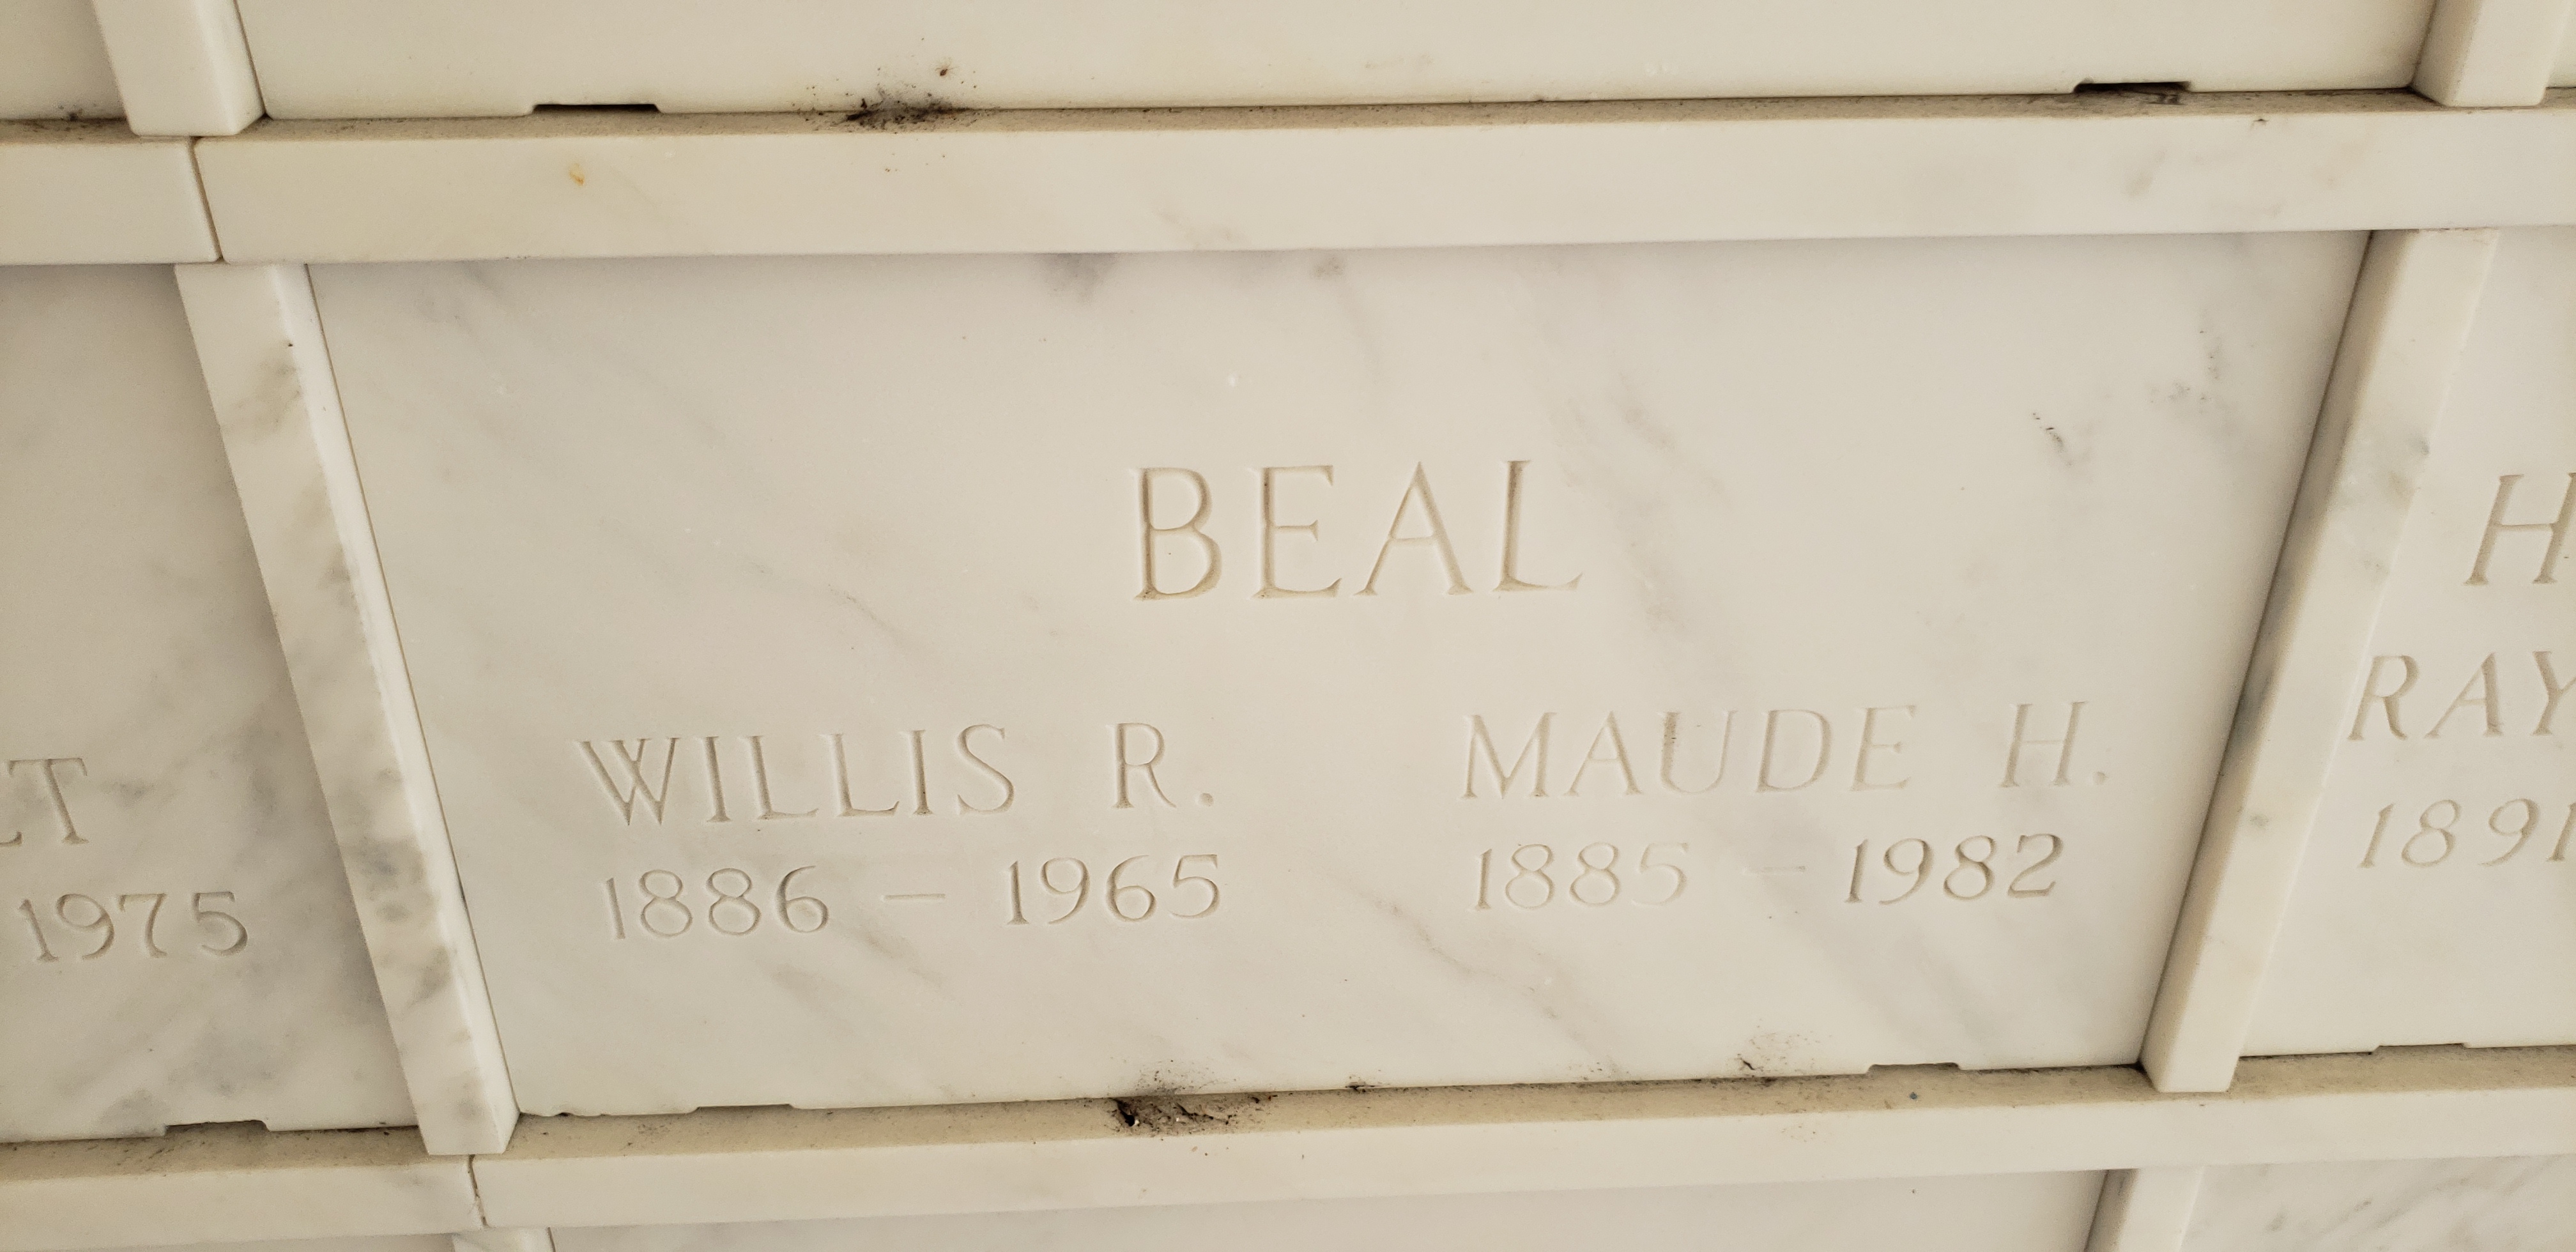 Willis R Beal